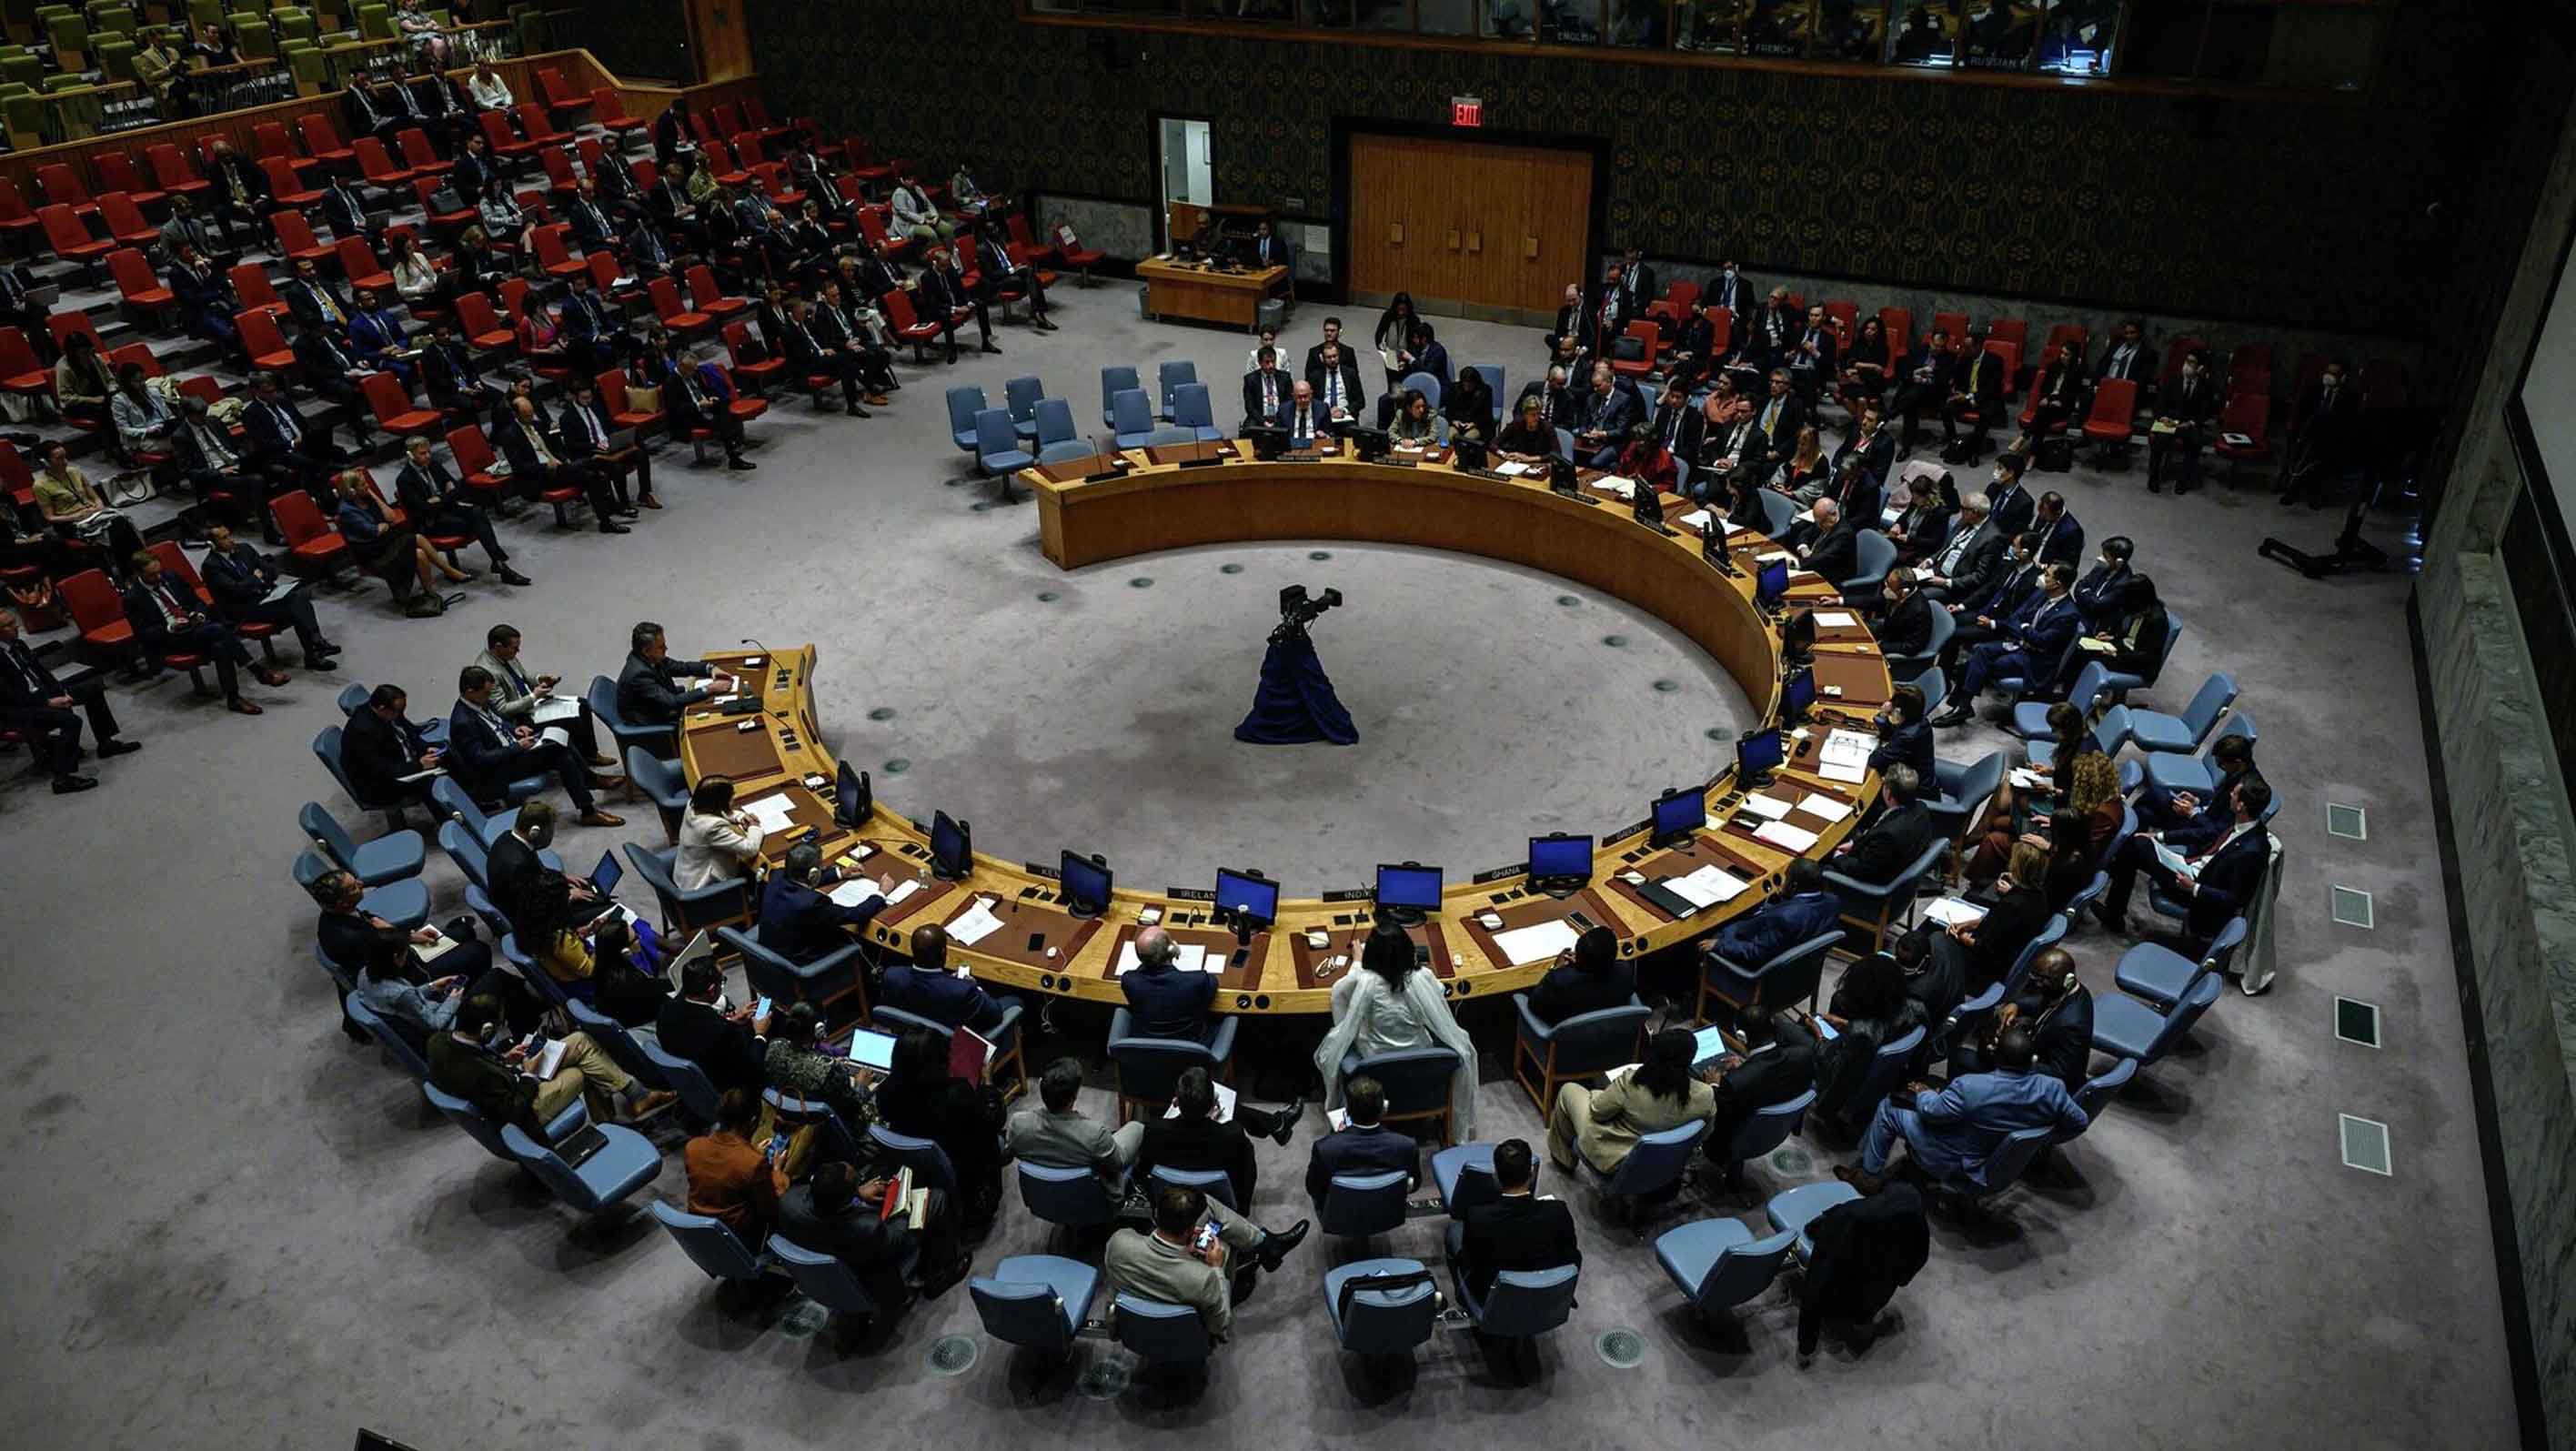 توكل كرمان: مجلس الامن الدولي يشكل خطرا بالغا على الامن والسلم الدوليين